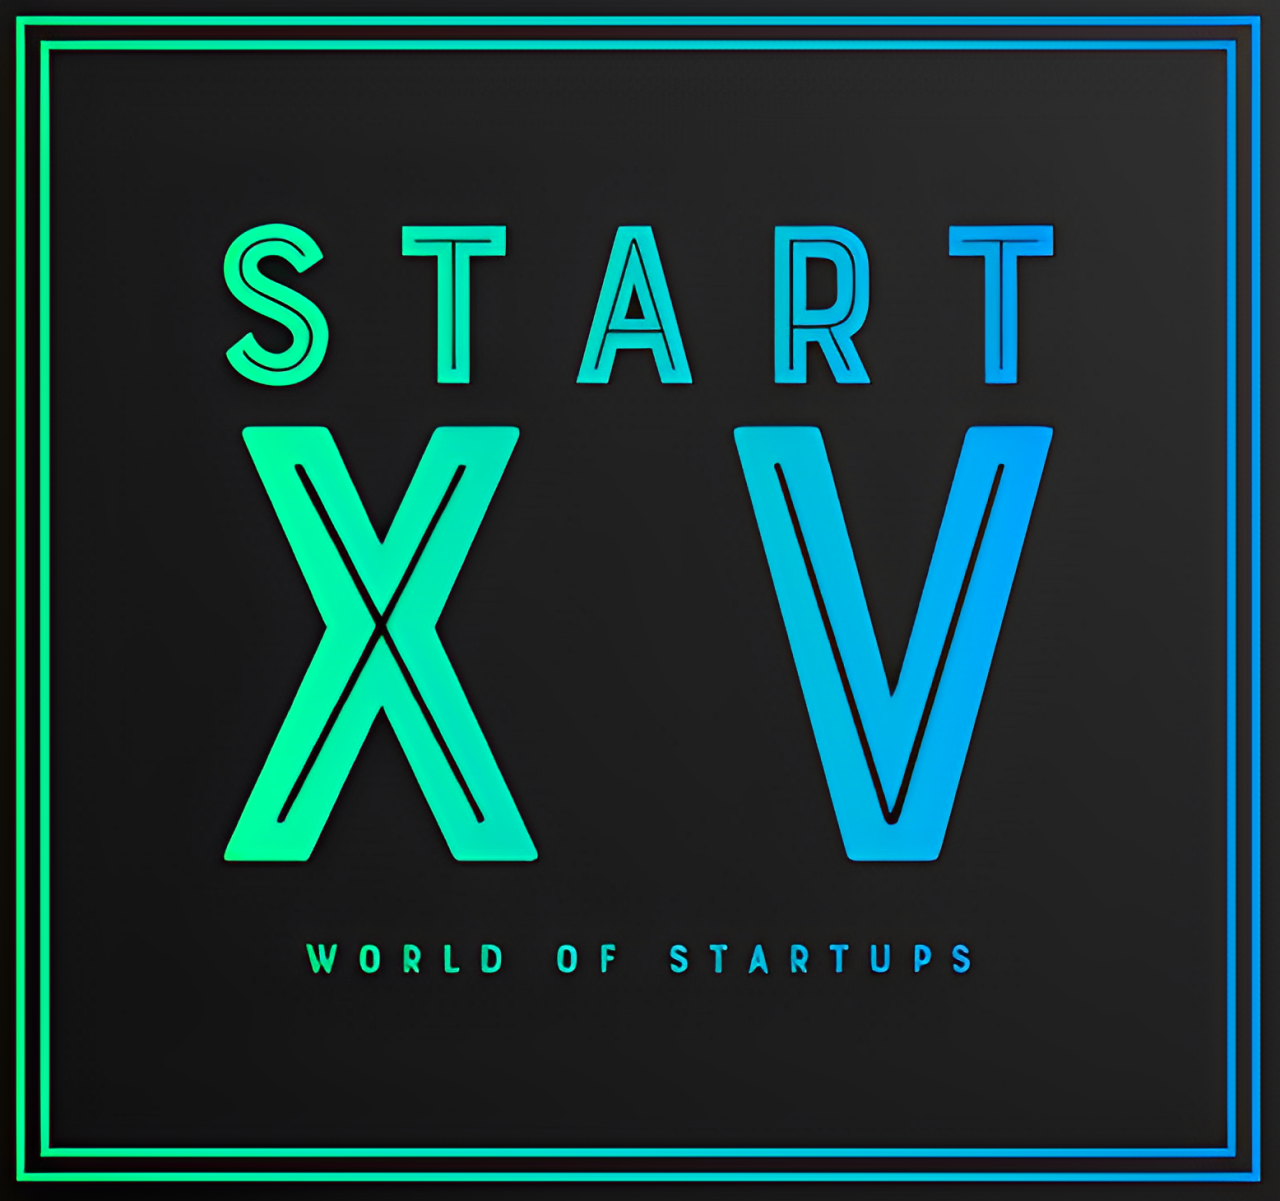 Startupz World